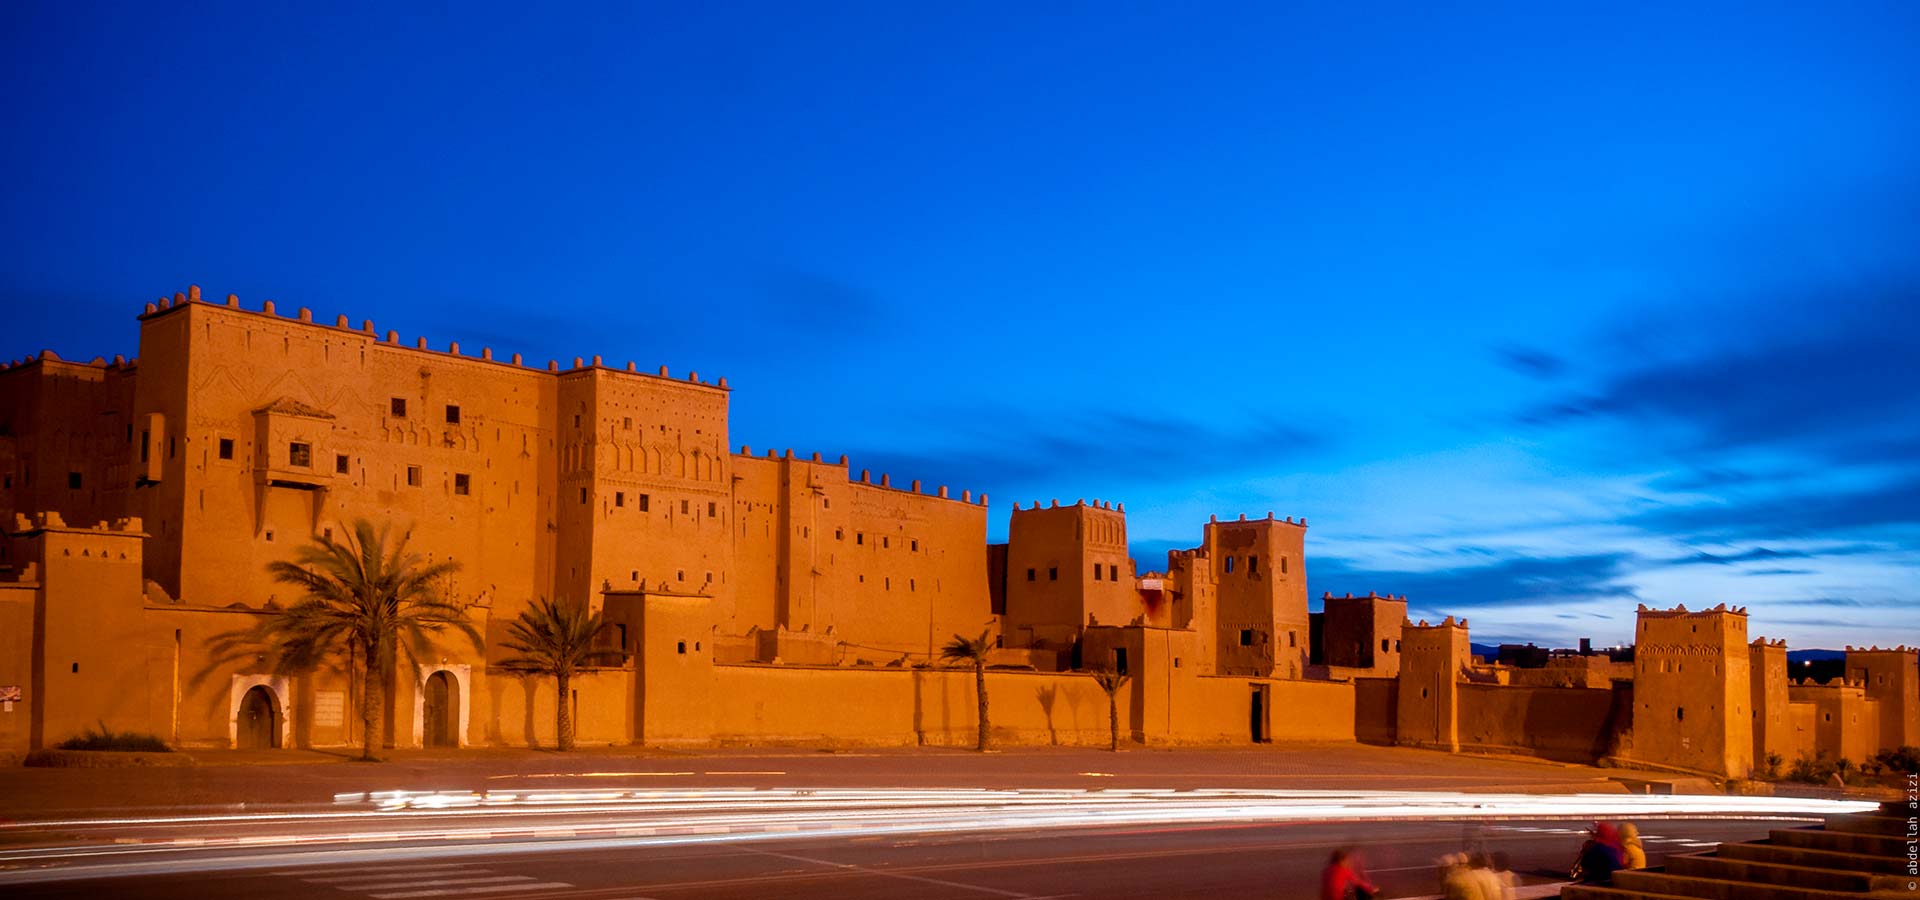 Taourirte est la médina ancienne de Ouarzazate, fief des anciens caïds Glaoui et aujourd'hui lieu mémoire du territoire